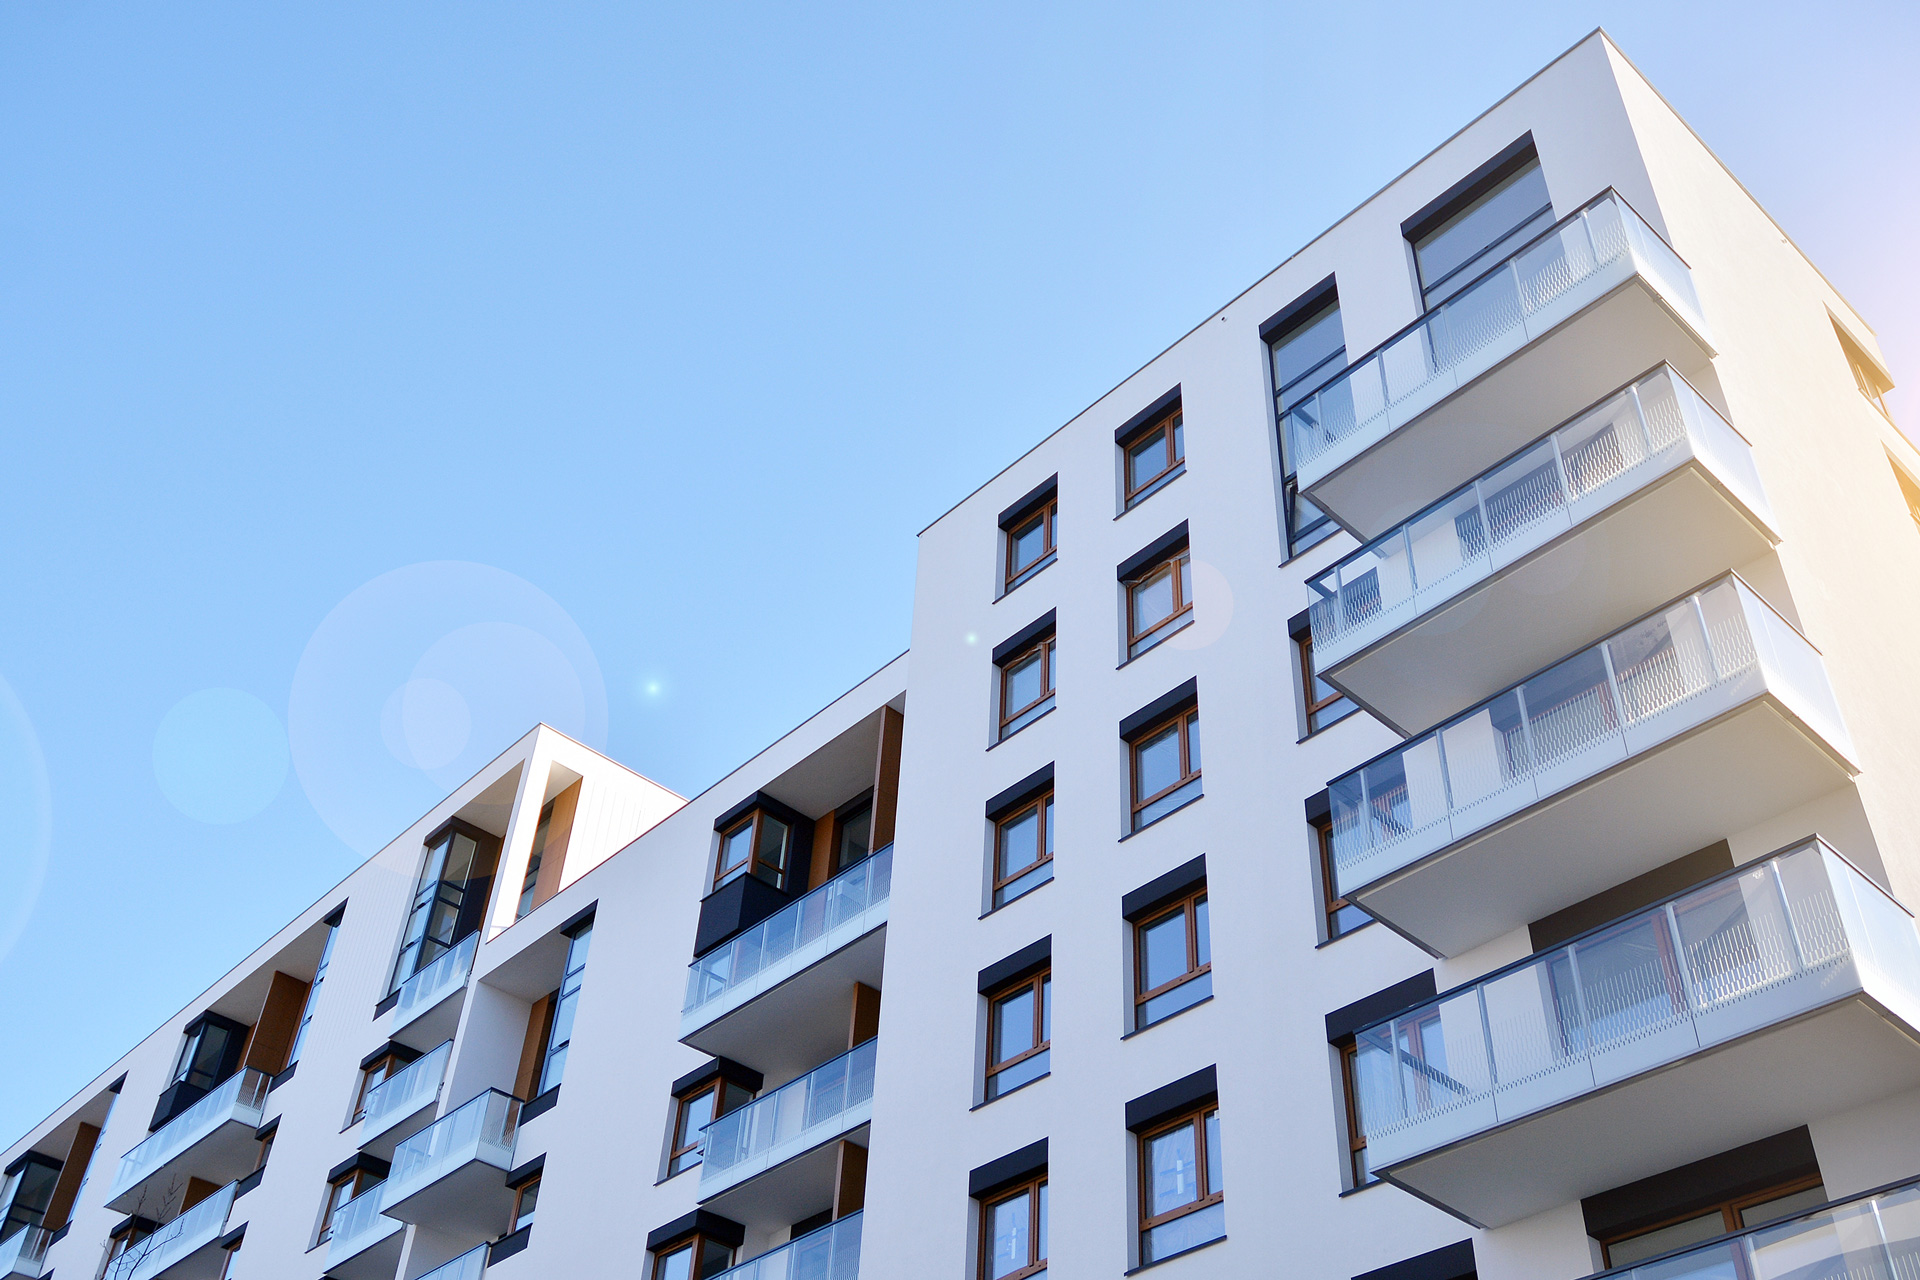 Moderne Mehrfamilienhäuser mit Balkonen unter blauem Himmel – Hausverwaltung inveni consulting